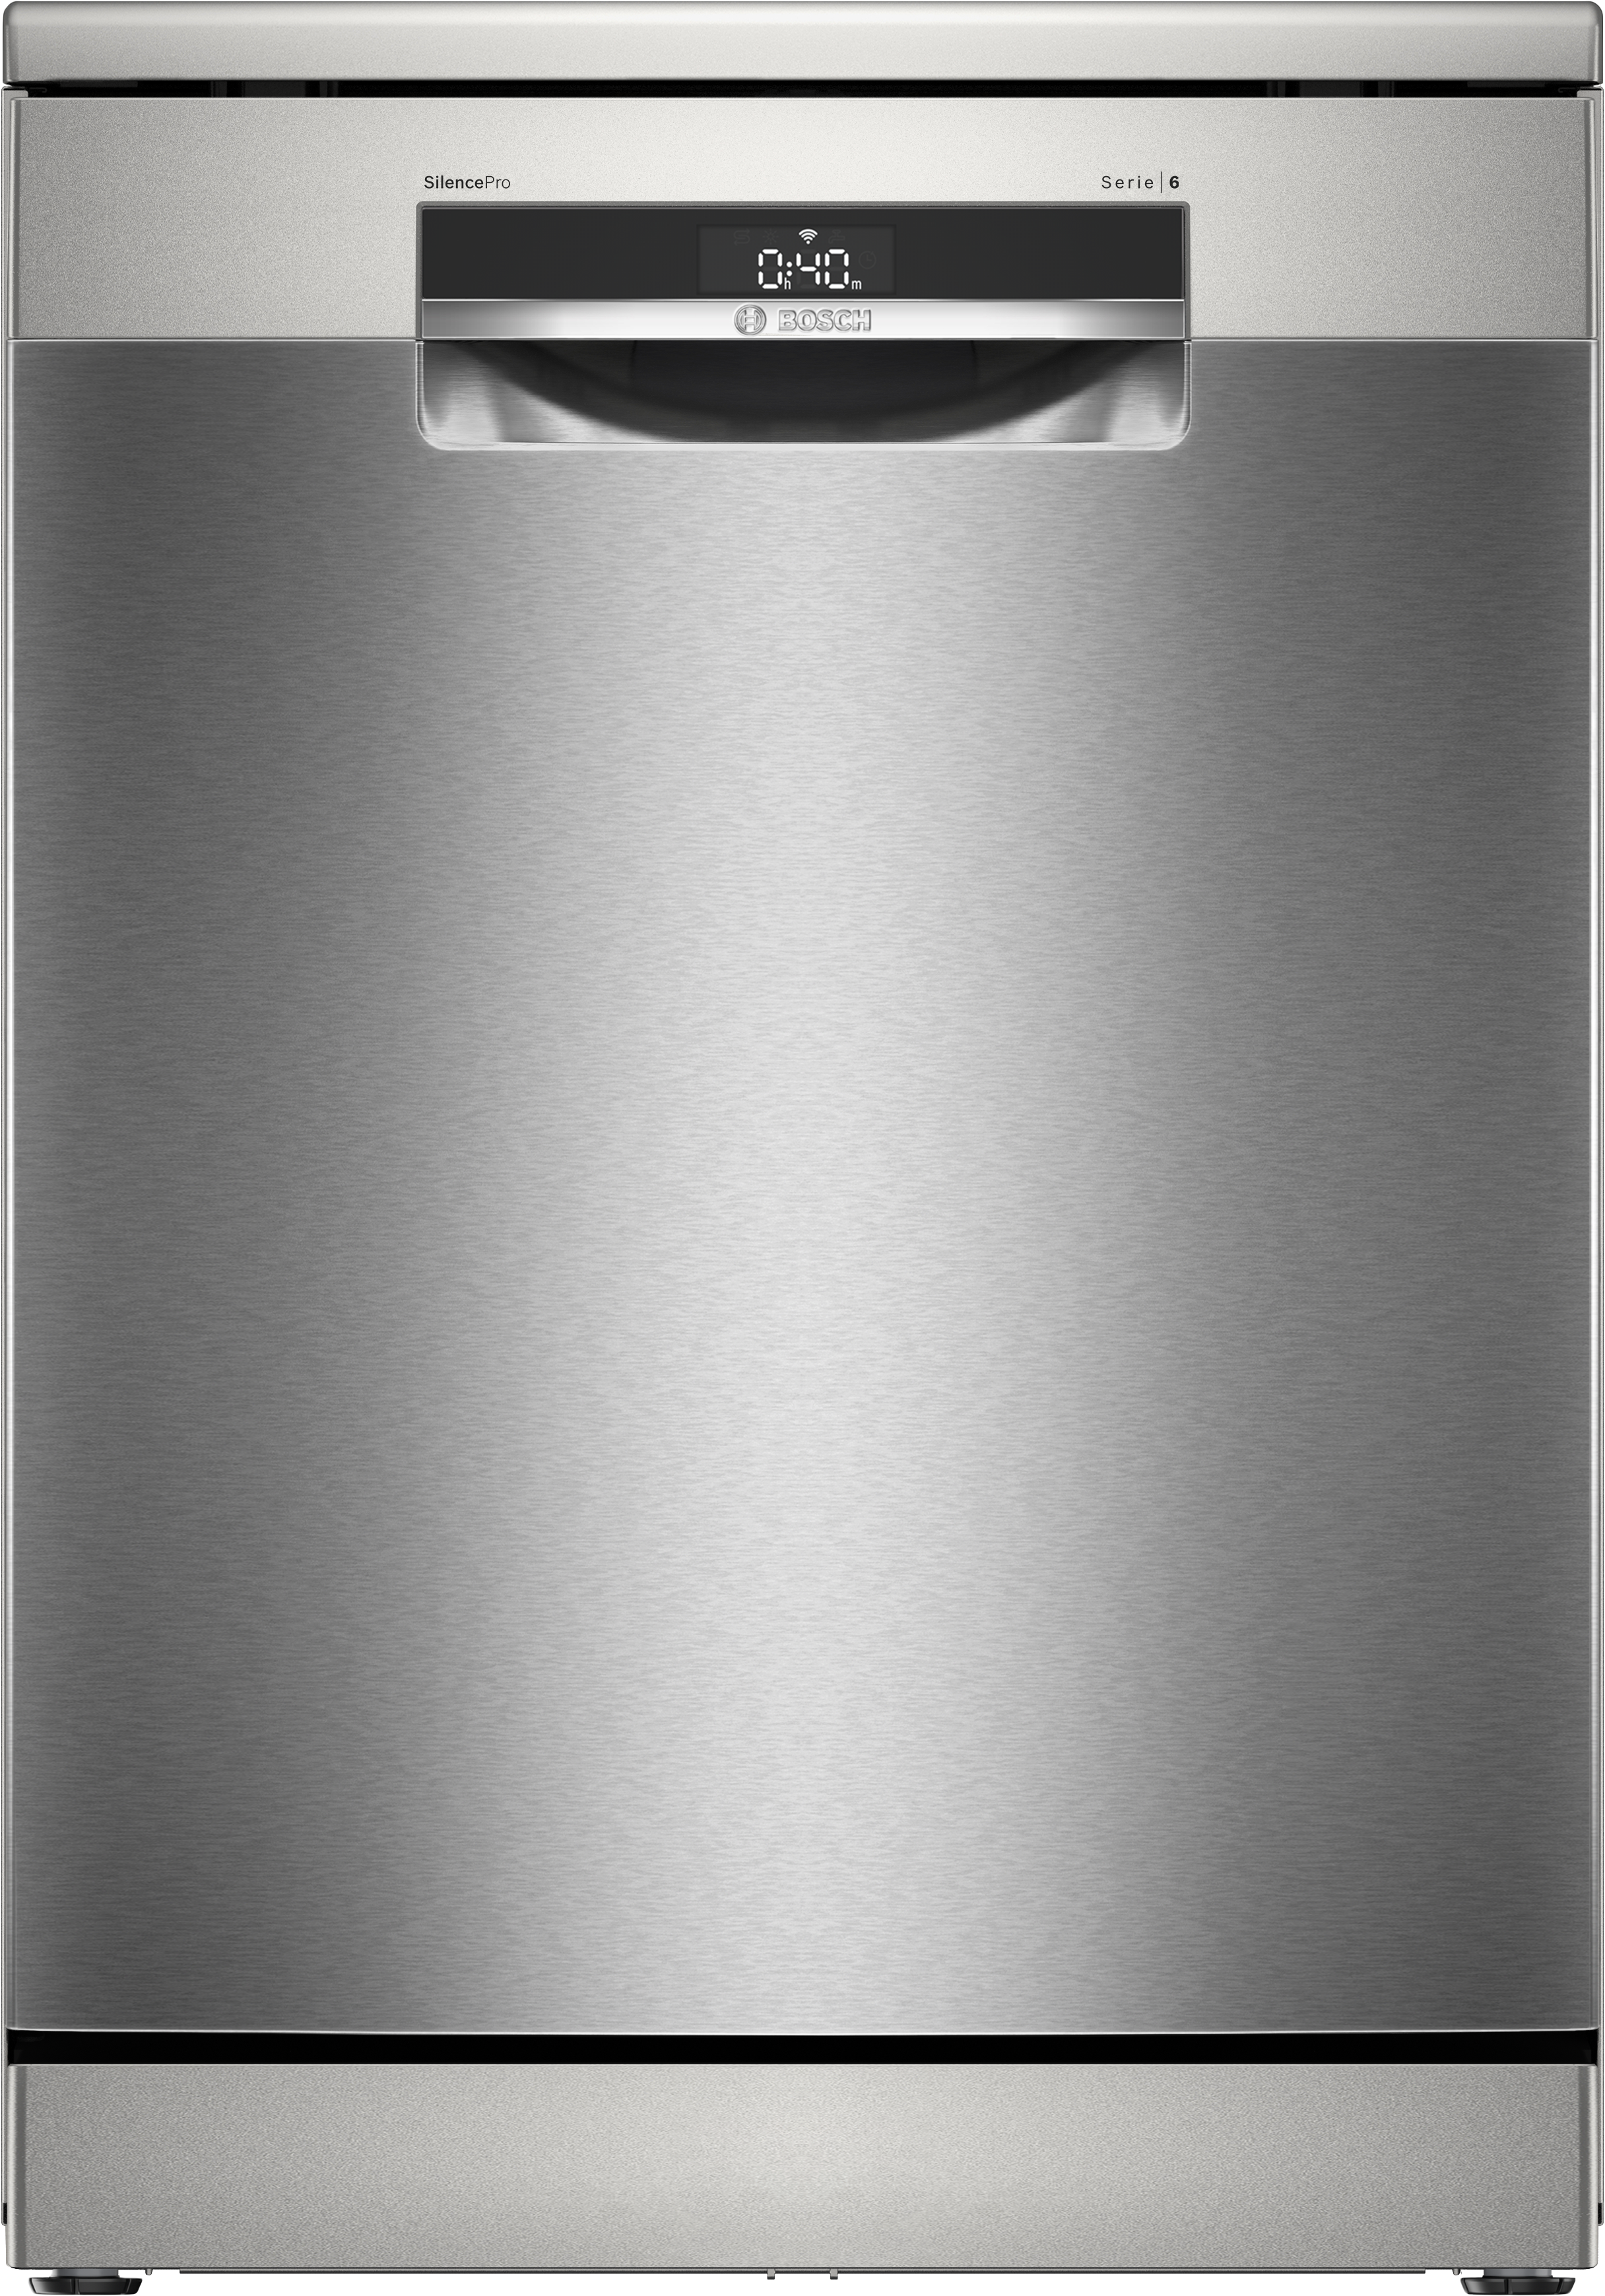 Serija 6, Samostojeća mašina za pranje sudova, 60 cm, Nerđajući čelik, SMS6ECI11E